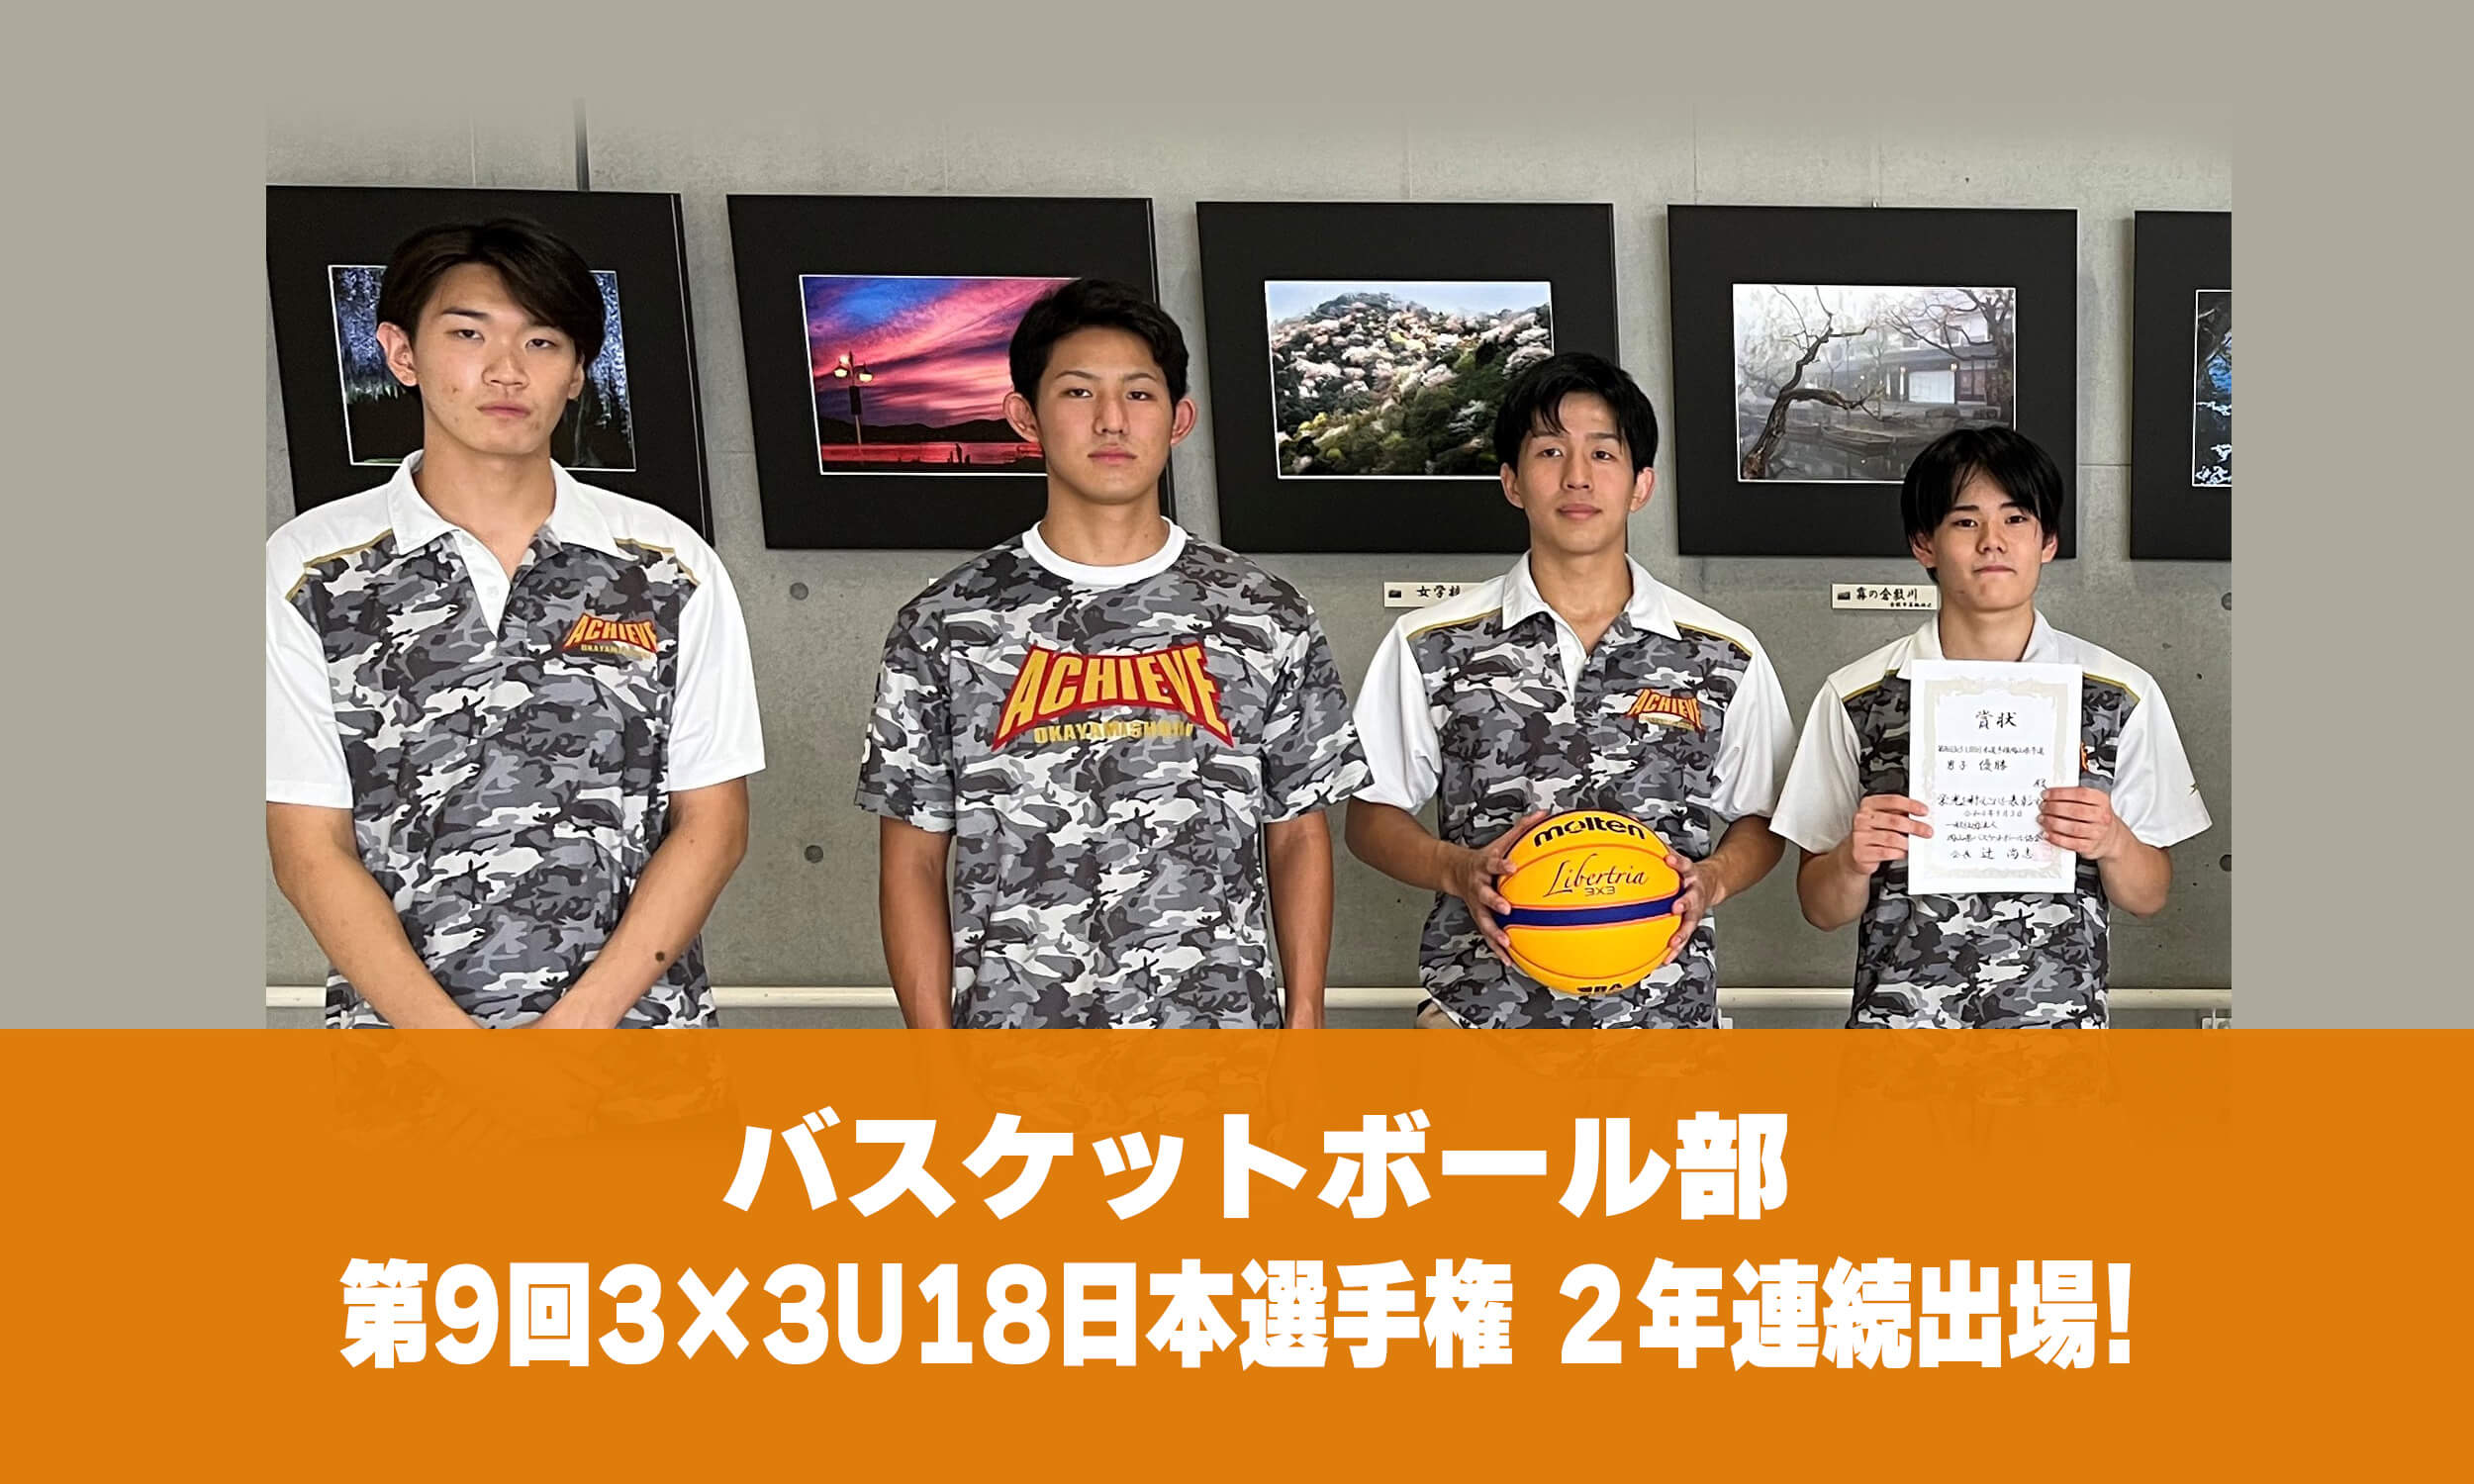 バスケットボール部　第9回3×3U18日本選手権 2年連続出場!